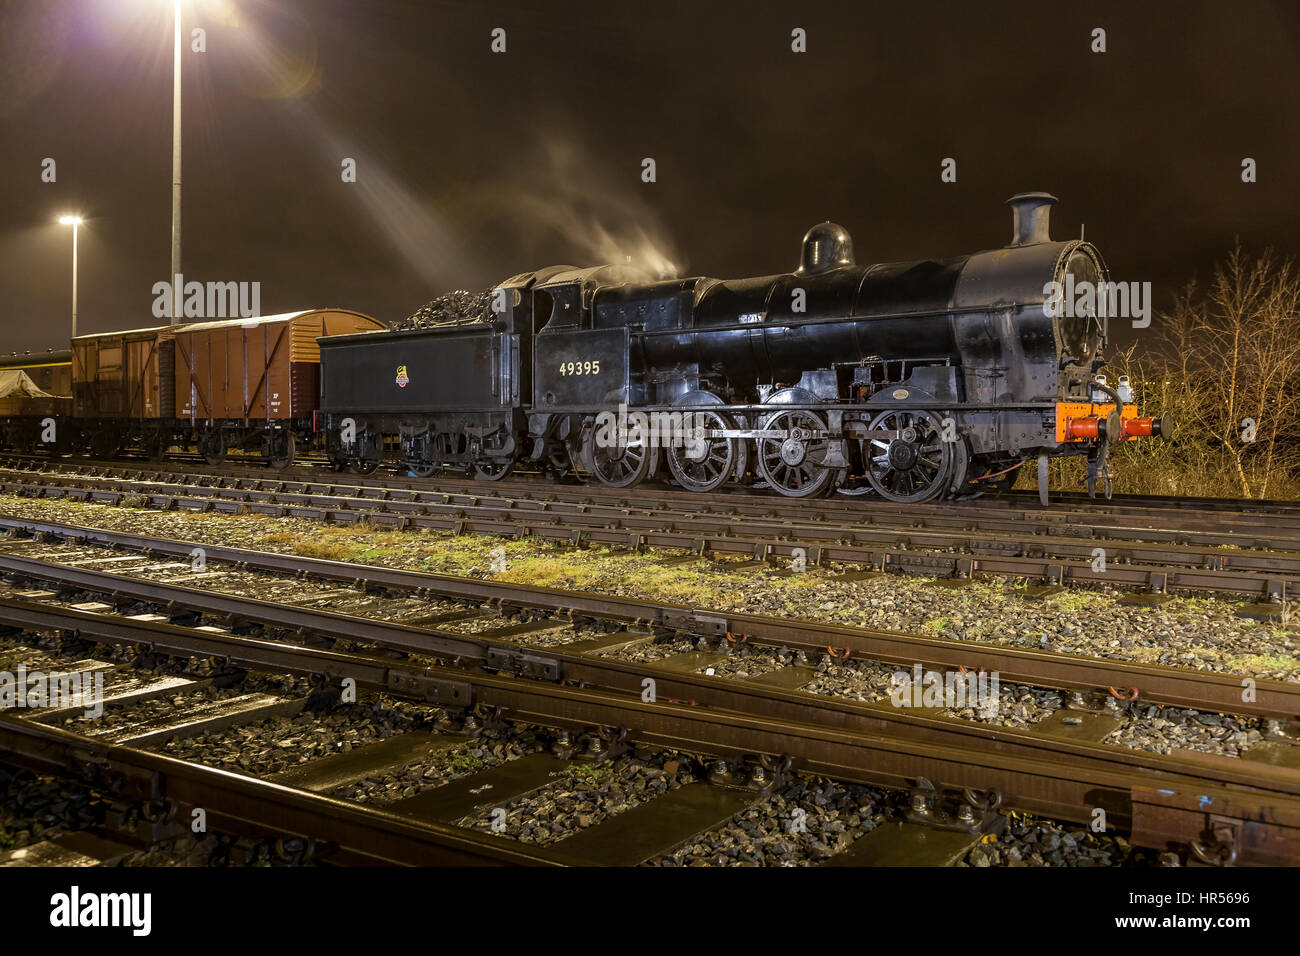 Des prises de nuit de locomotives à vapeur au siège de l'enterrer East Lancashire Railway. nightshoot LNWR survivant seule 0-8-0, classe G2 Super [ou "D" Banque D'Images